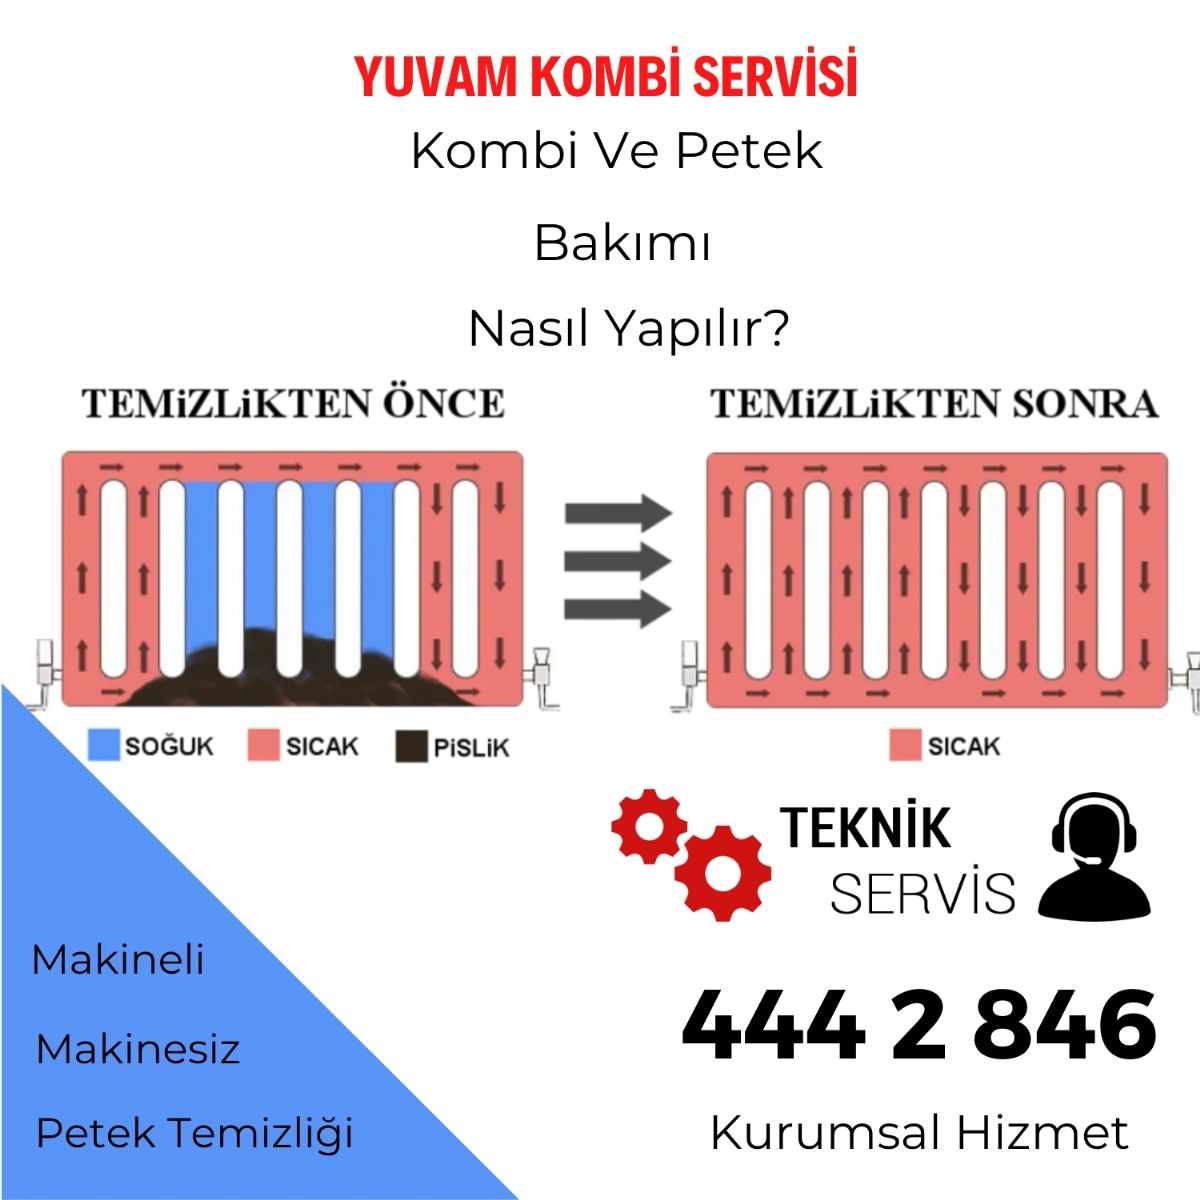 Kombi petek bakımı nasıl yapılır-Yuvam Teknik-444 2 846